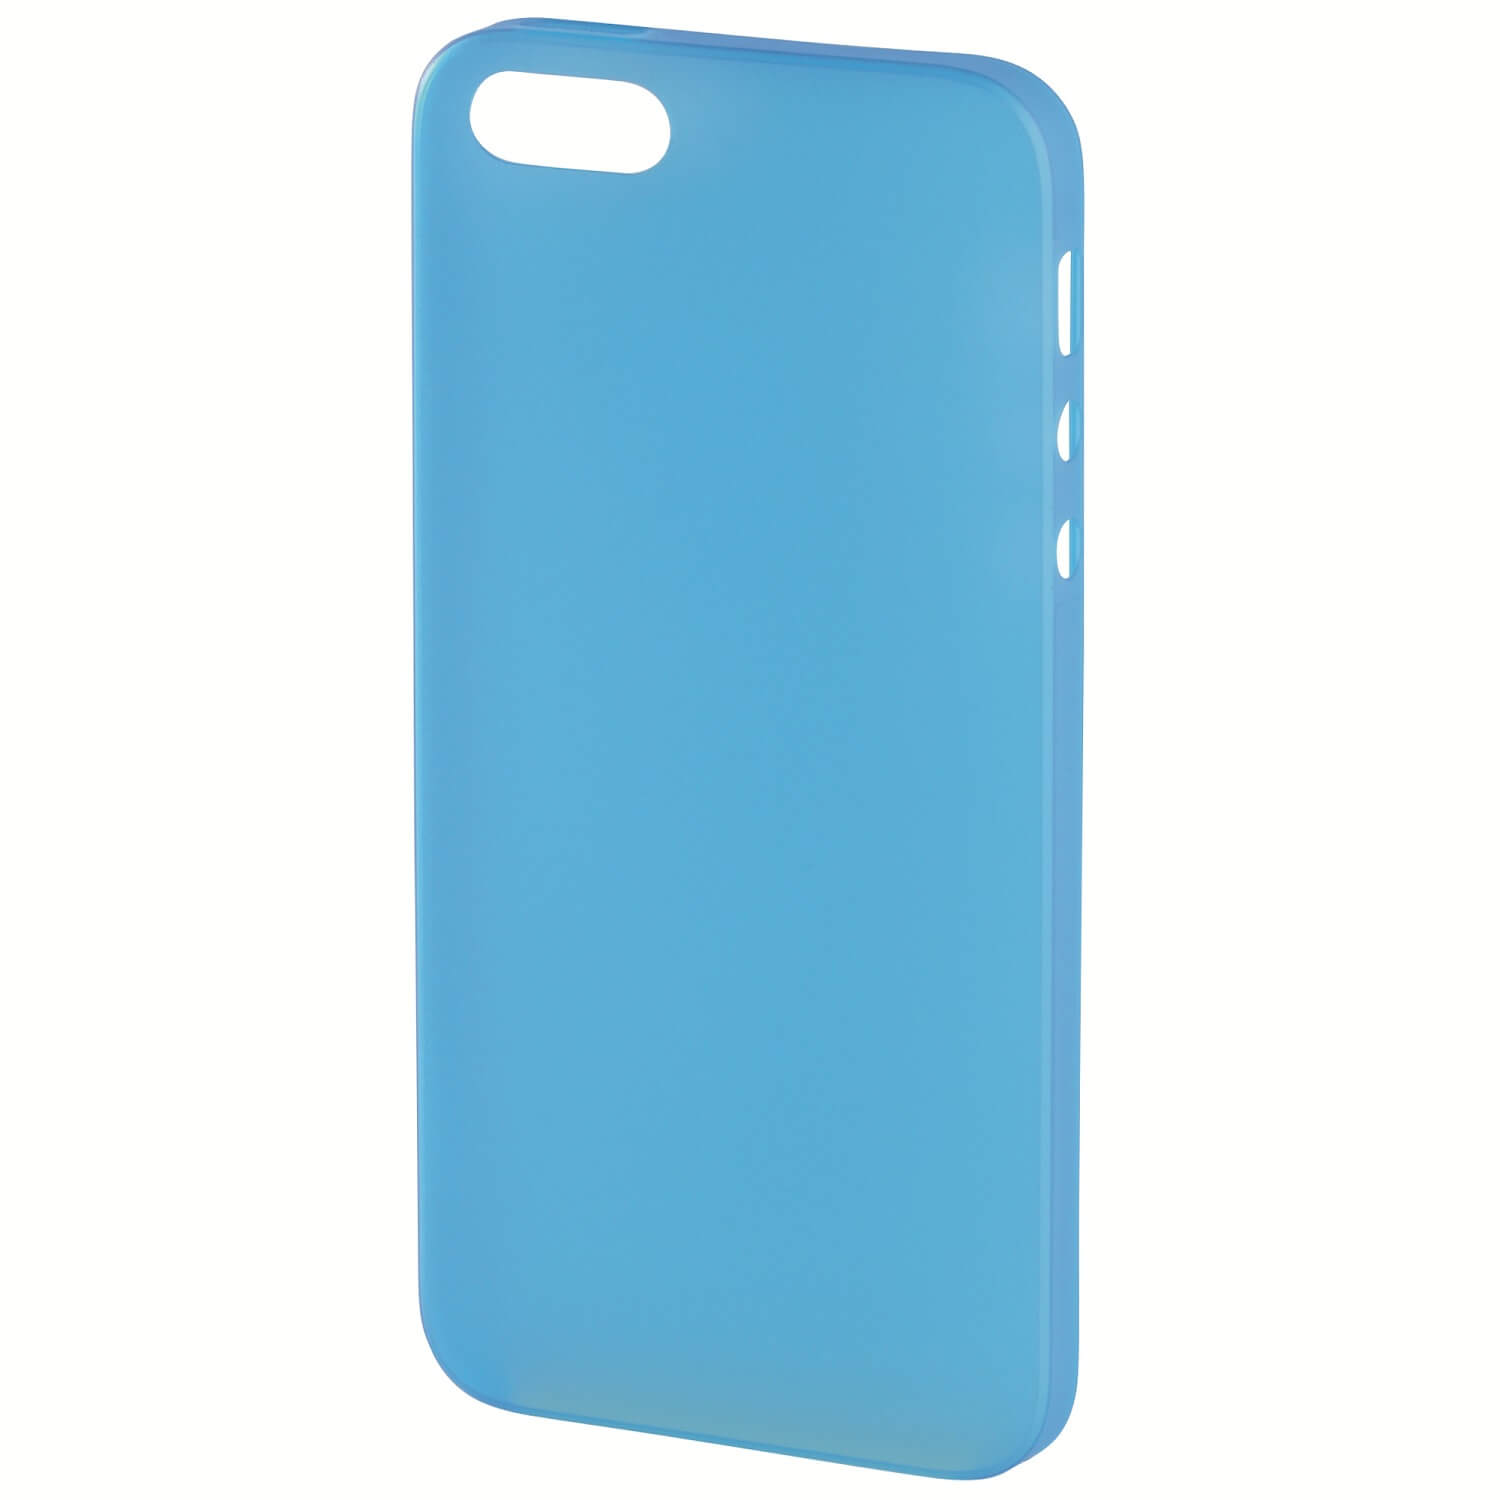 Carcasa de protectie Hama 135009 Ultra Slim pentru iPhone 6/6S Albastru